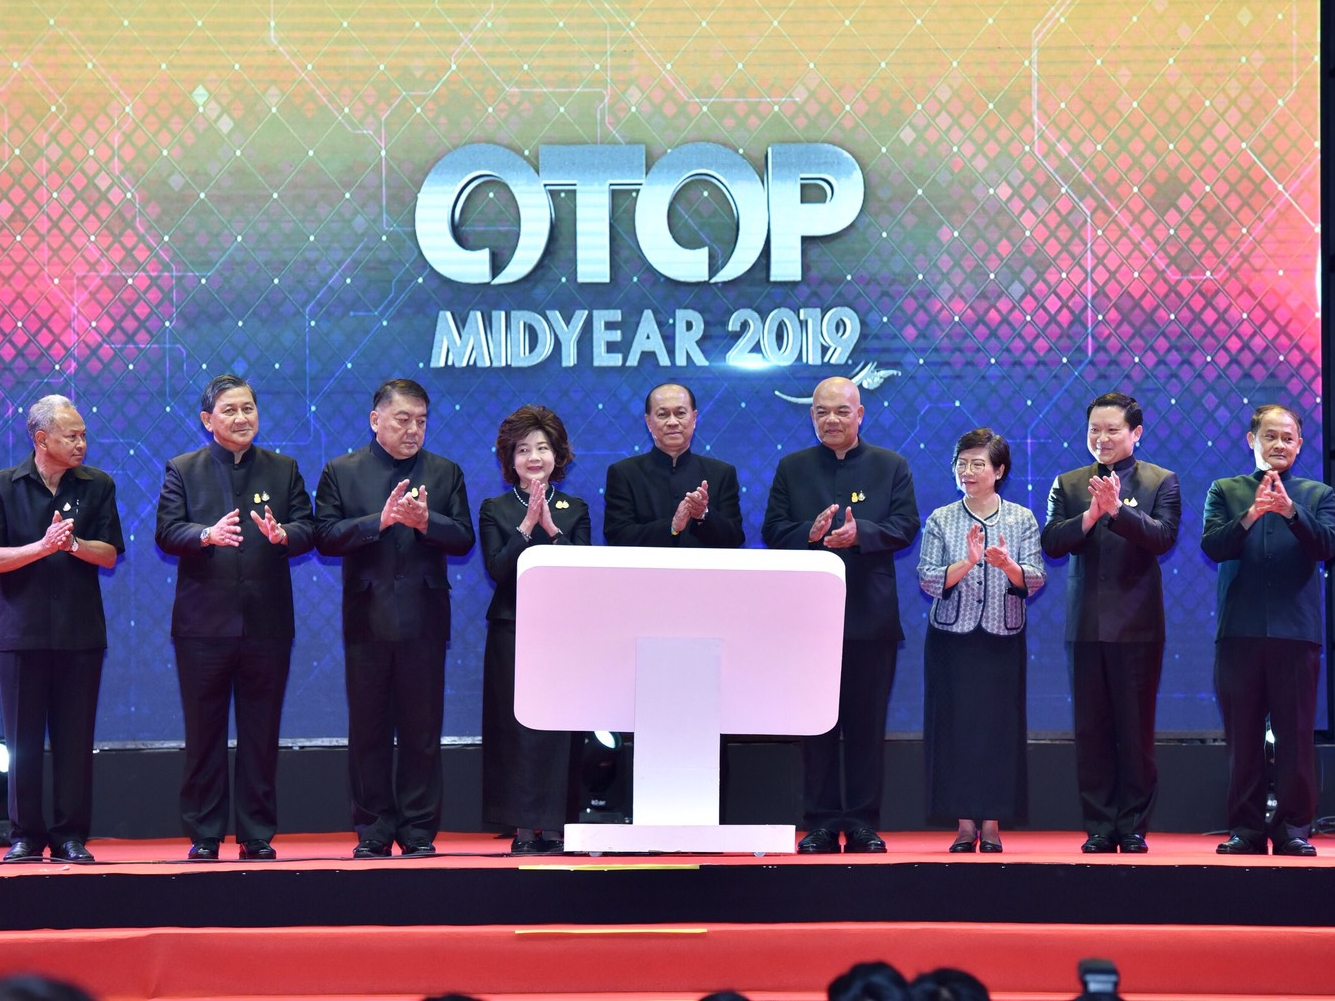 พิธีเปิด งาน OTOP Midyear 2019 : OTOP Signature รักษาเอกลักษณ์ สร้างสรรค์นวัตกรรม